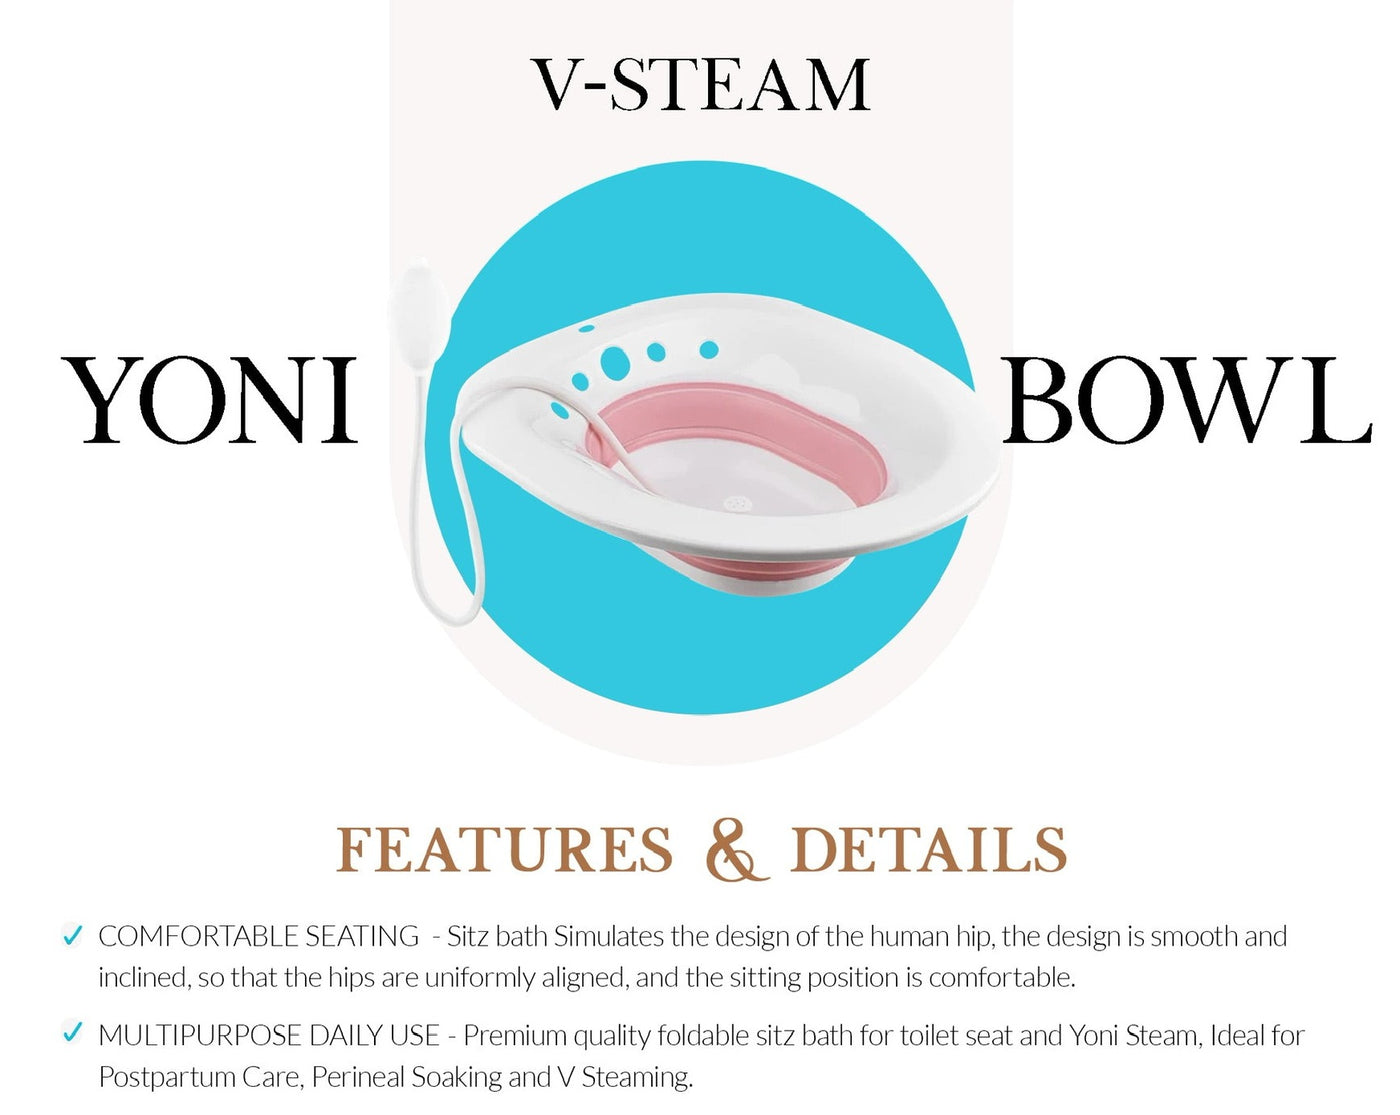 Yoni V-Steam BOWL. Comfortable for Sitz Bath